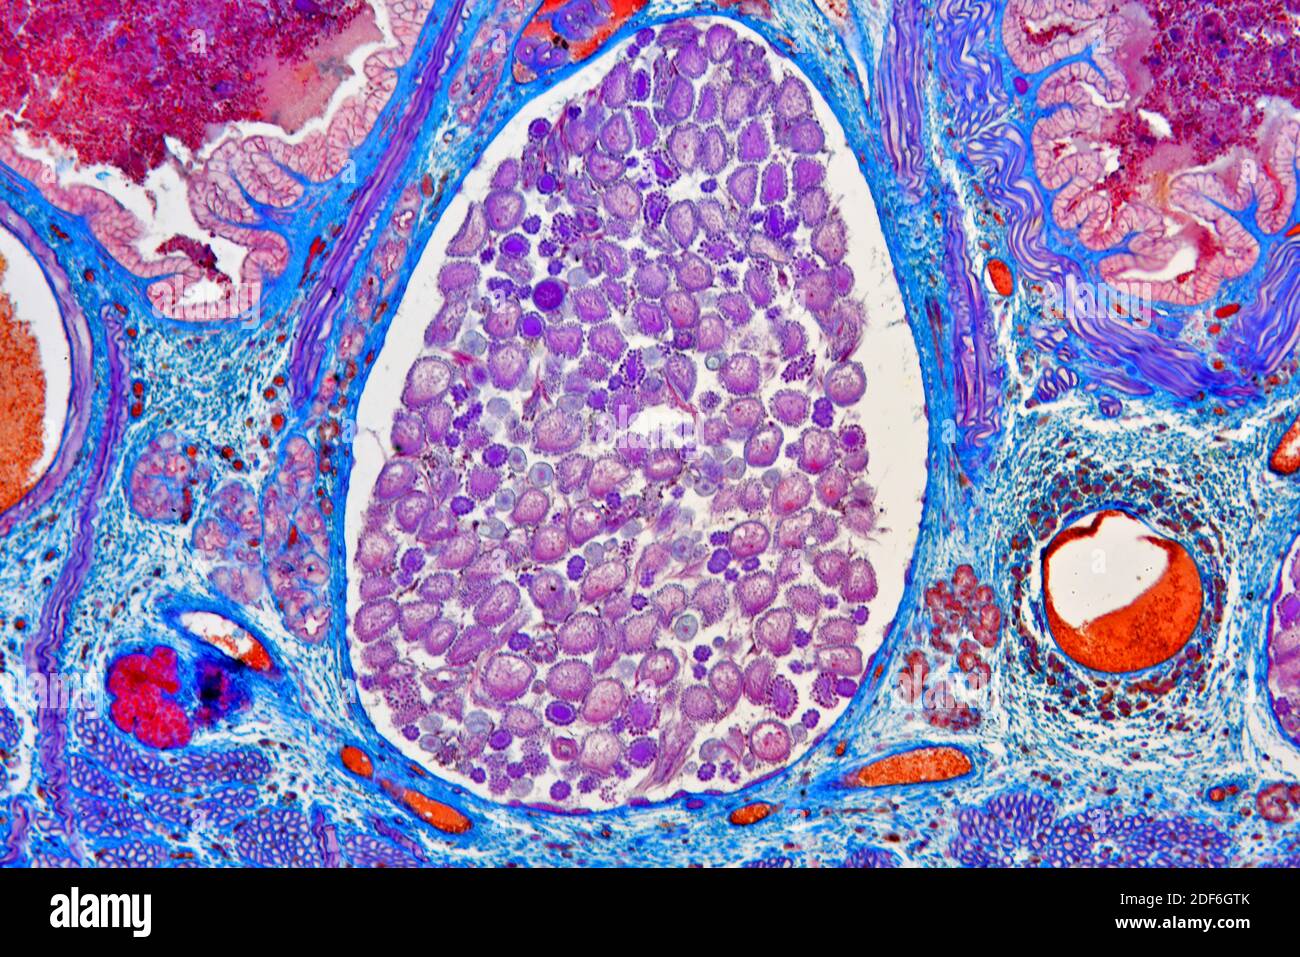 Sezione trasversale della leech medicinale europea (Hirudo medicinalis) che mostra l'utero e l'intestino e il diverticolo del raccolto. Microscopio ottico X100. Foto Stock